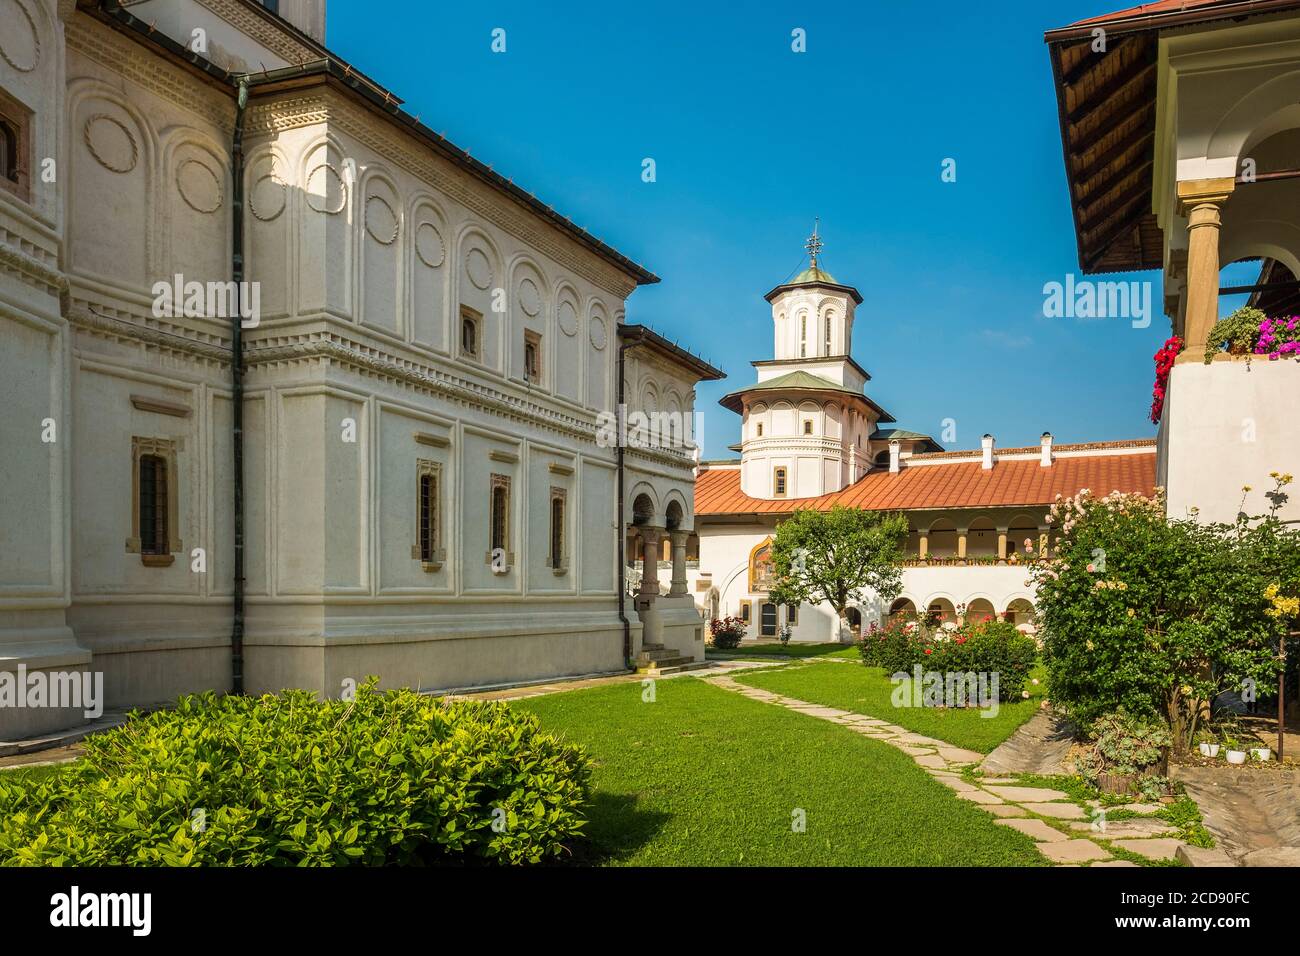 Rumänien, der Walachei, Horezu, das Kloster Horezu wurde als UNESCO-Weltkulturerbe im Jahr 1993 für die Qualität der Erhaltung dieser Gemälde von mehr als 300 Jahren aufgeführt Stockfoto